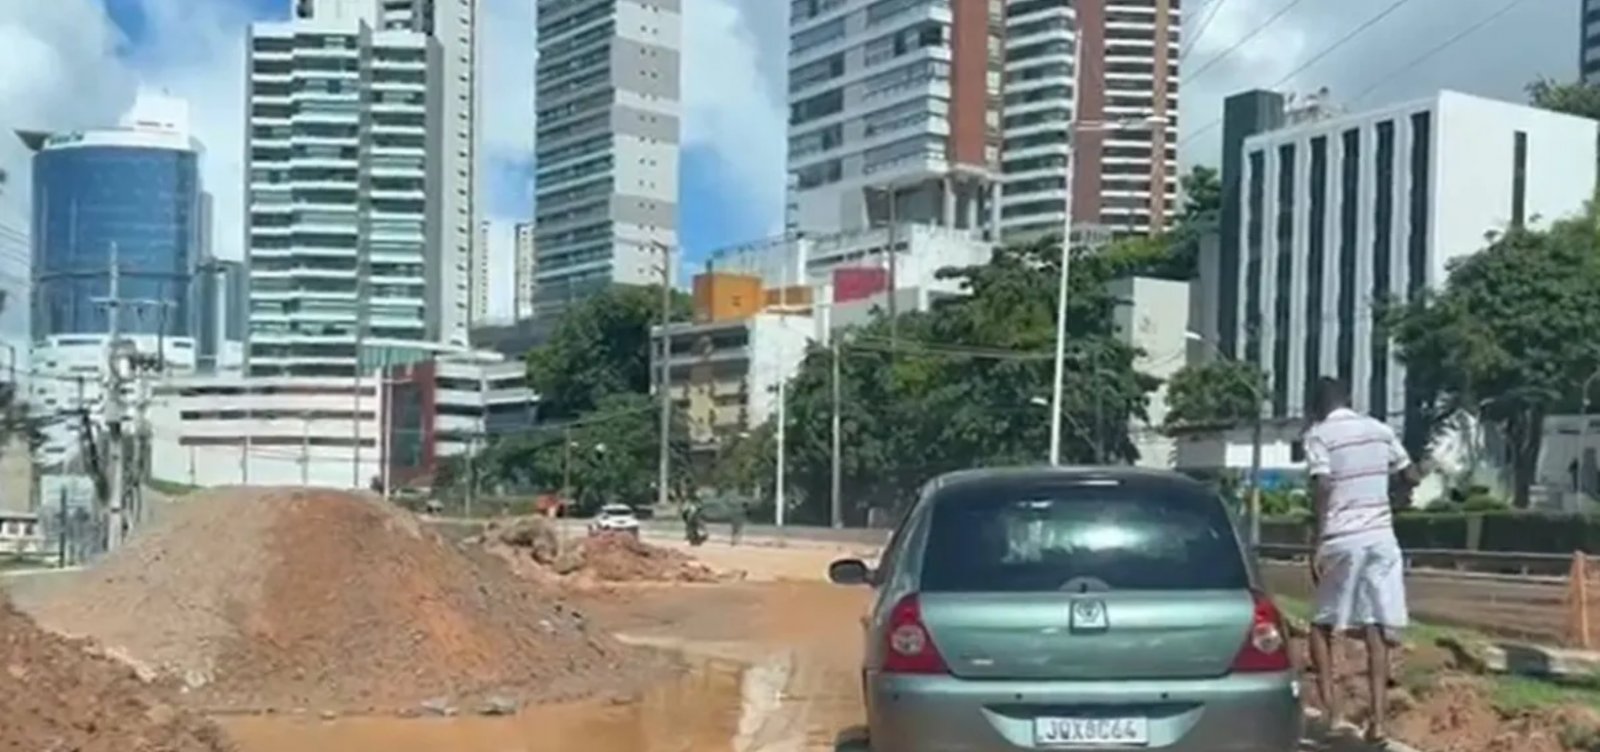 Bairros de Salvador ficam sem água após rompimento de adutora na Avenida Juracy Magalhães